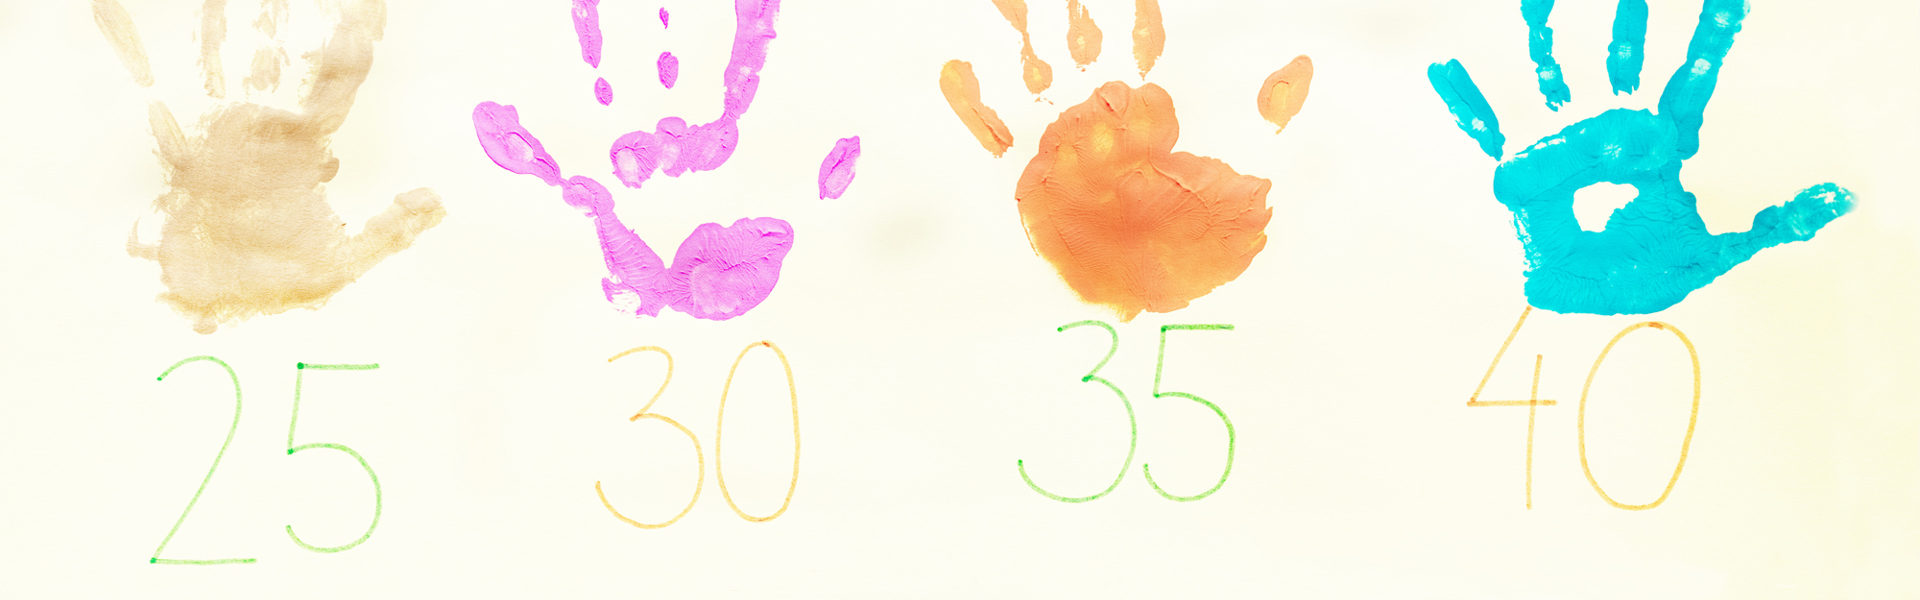 Kuvassa painettuja eri värisiä lasten kädenjäkiä ja numeroita.